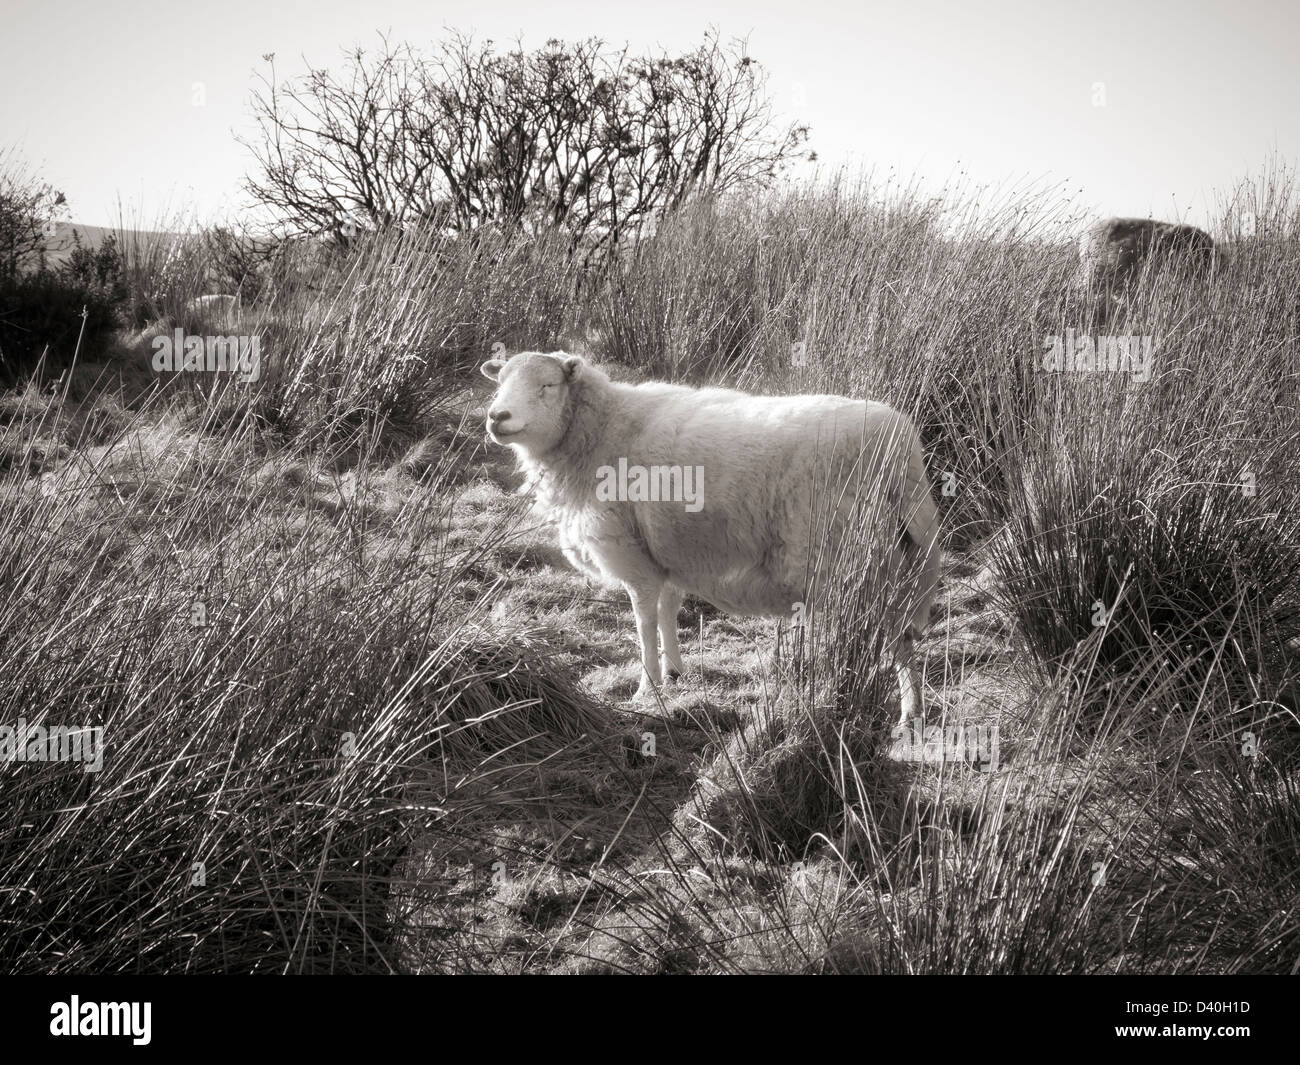 Immagine monocromatica di una pecora back lit in piedi su un terreno accidentato con erba e ginestre Foto Stock